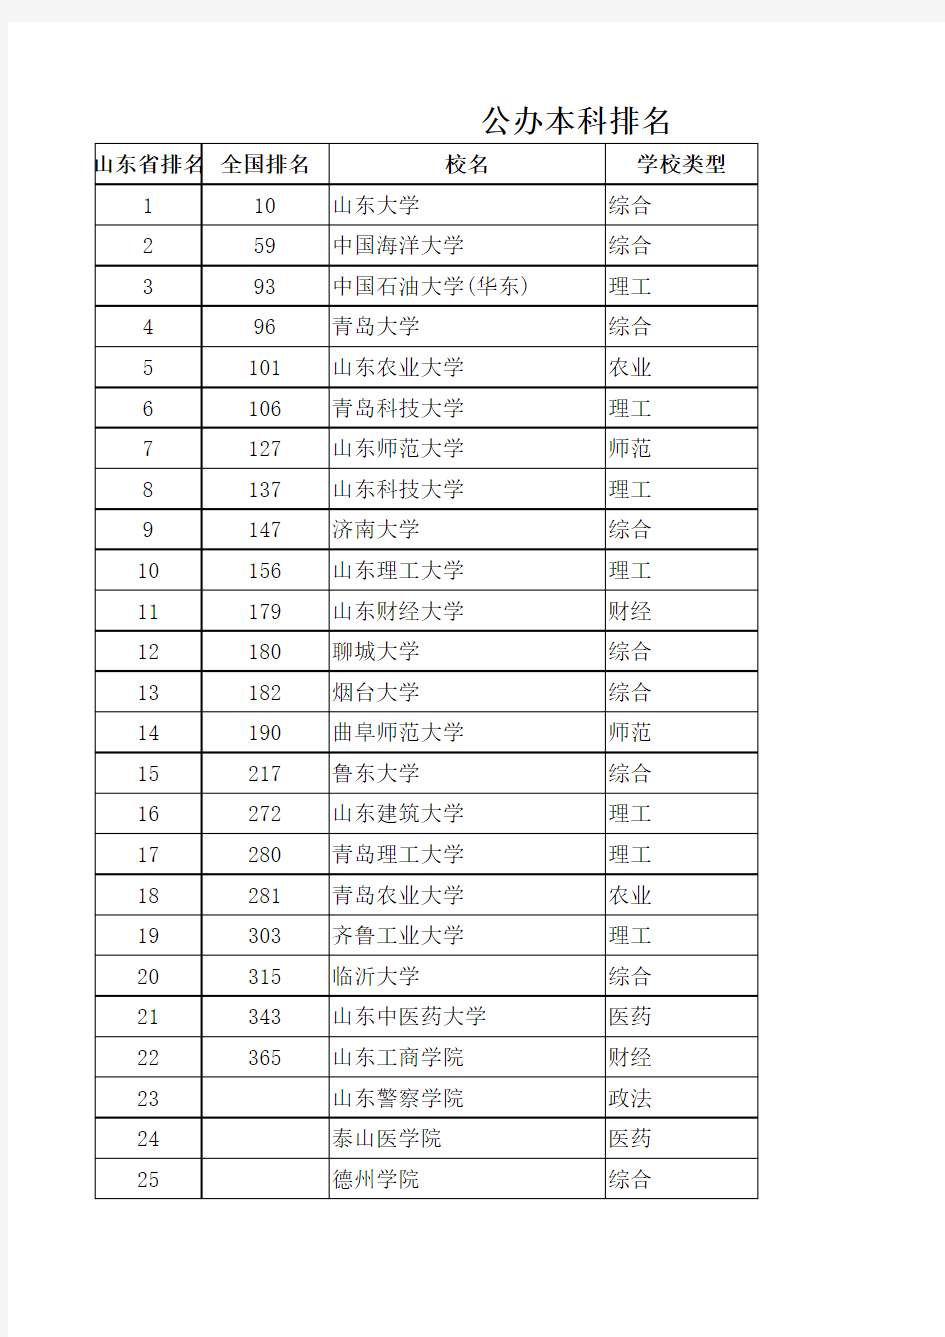 2014山东普通本科院校排名(含独立学院、民办高校)